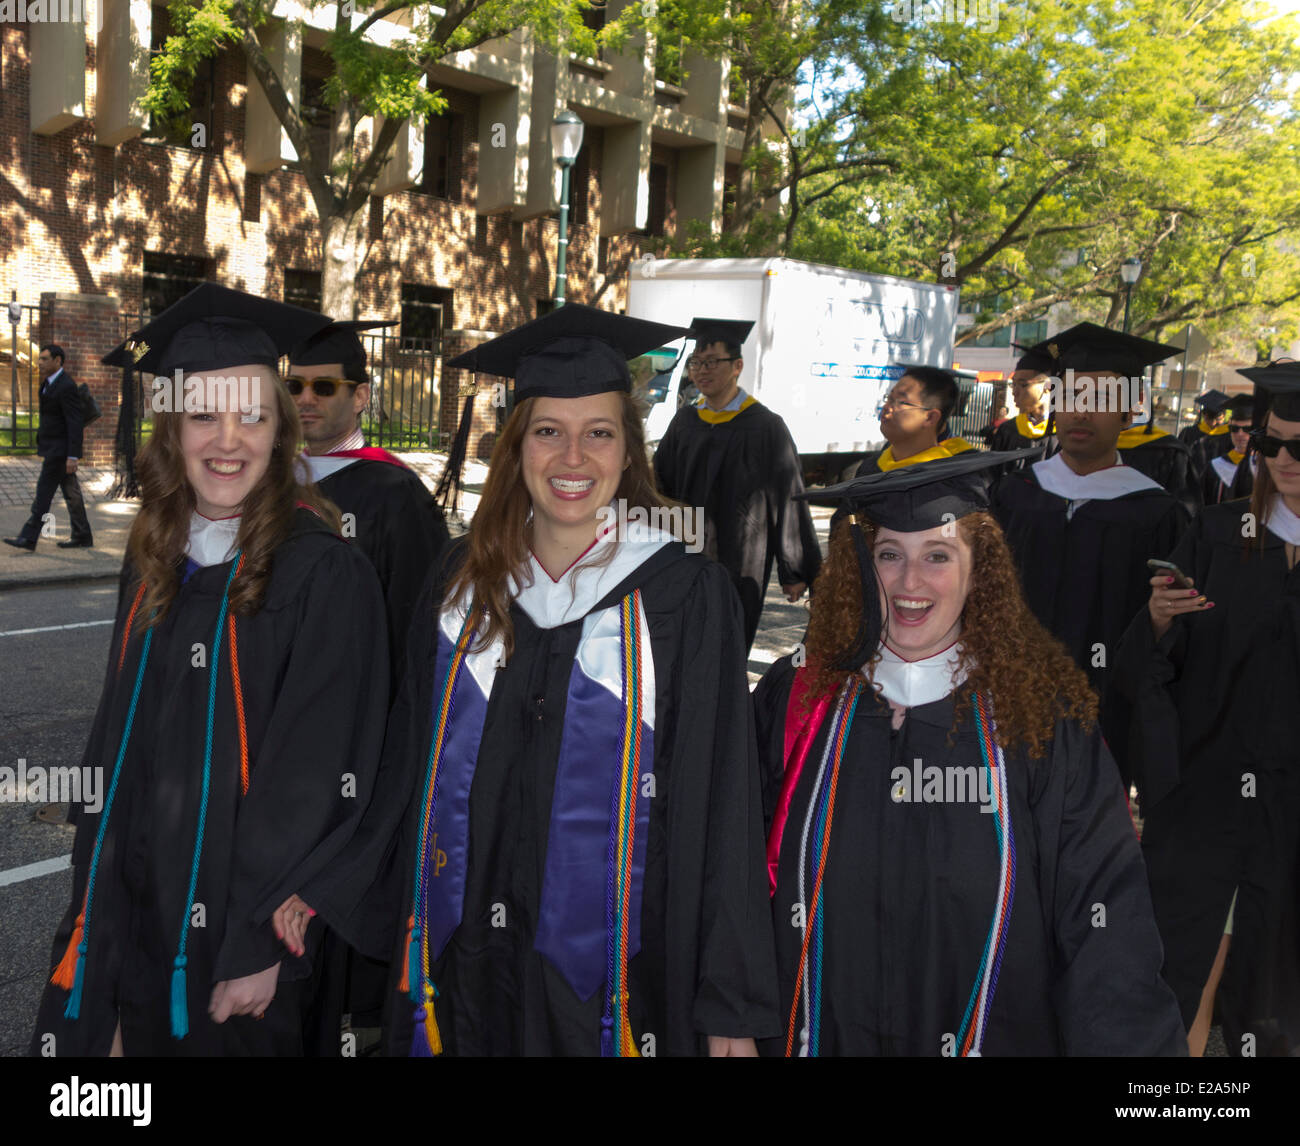 Absolventinnen und Absolventen der Universität von Pennsylvania, die gehen auf der Straße, Philadelphia, USA Stockfoto